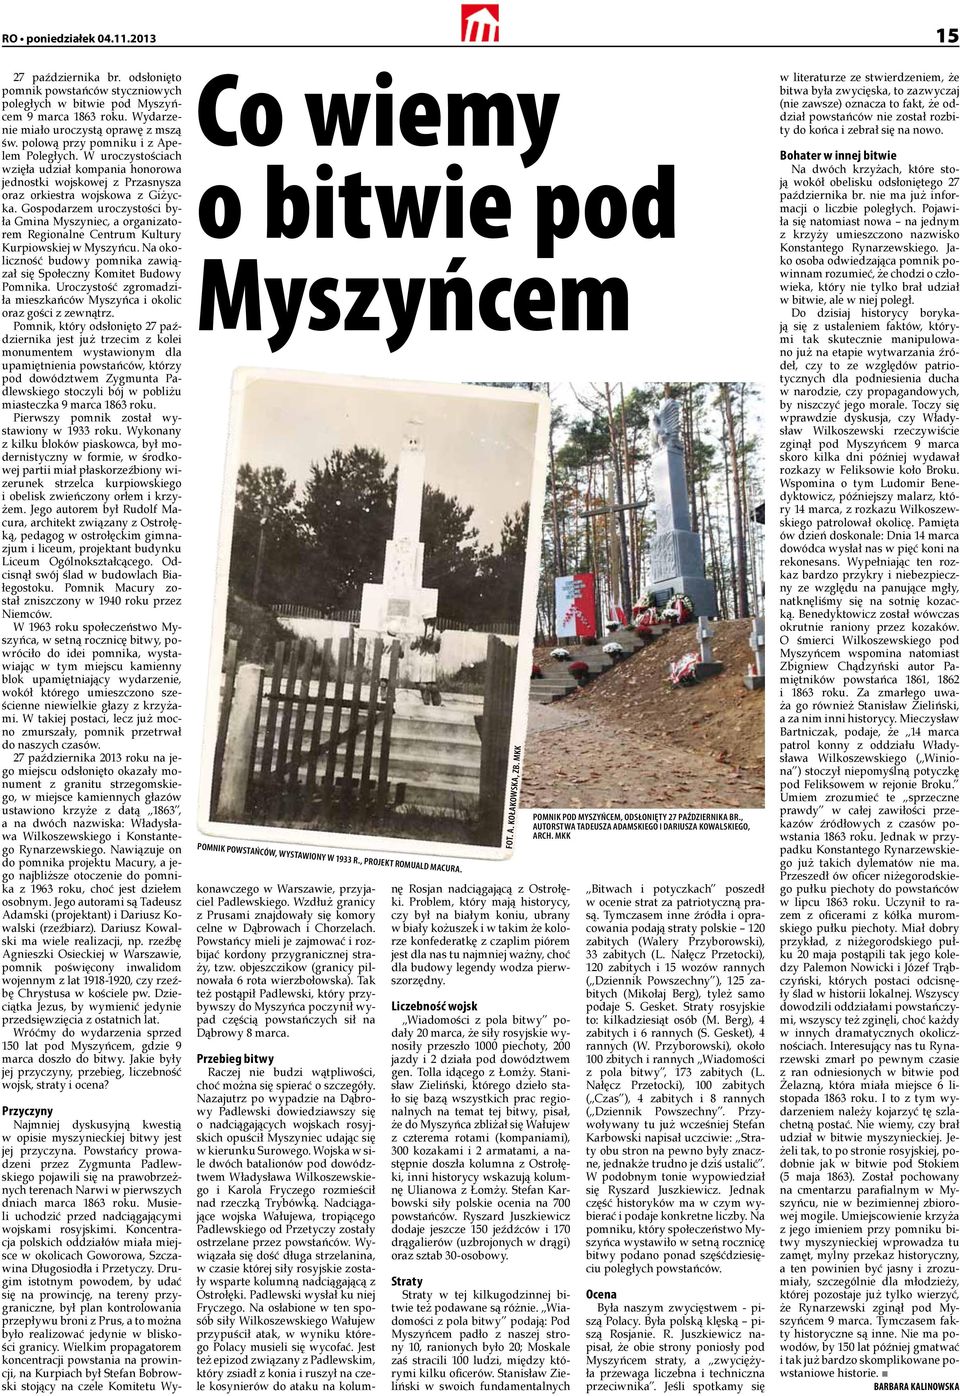 Gospodarzem uroczystości była Gmina Myszyniec, a organizatorem Regionalne Centrum Kultury Kurpiowskiej w Myszyńcu. Na okoliczność budowy pomnika zawiązał się Społeczny Komitet Budowy Pomnika.